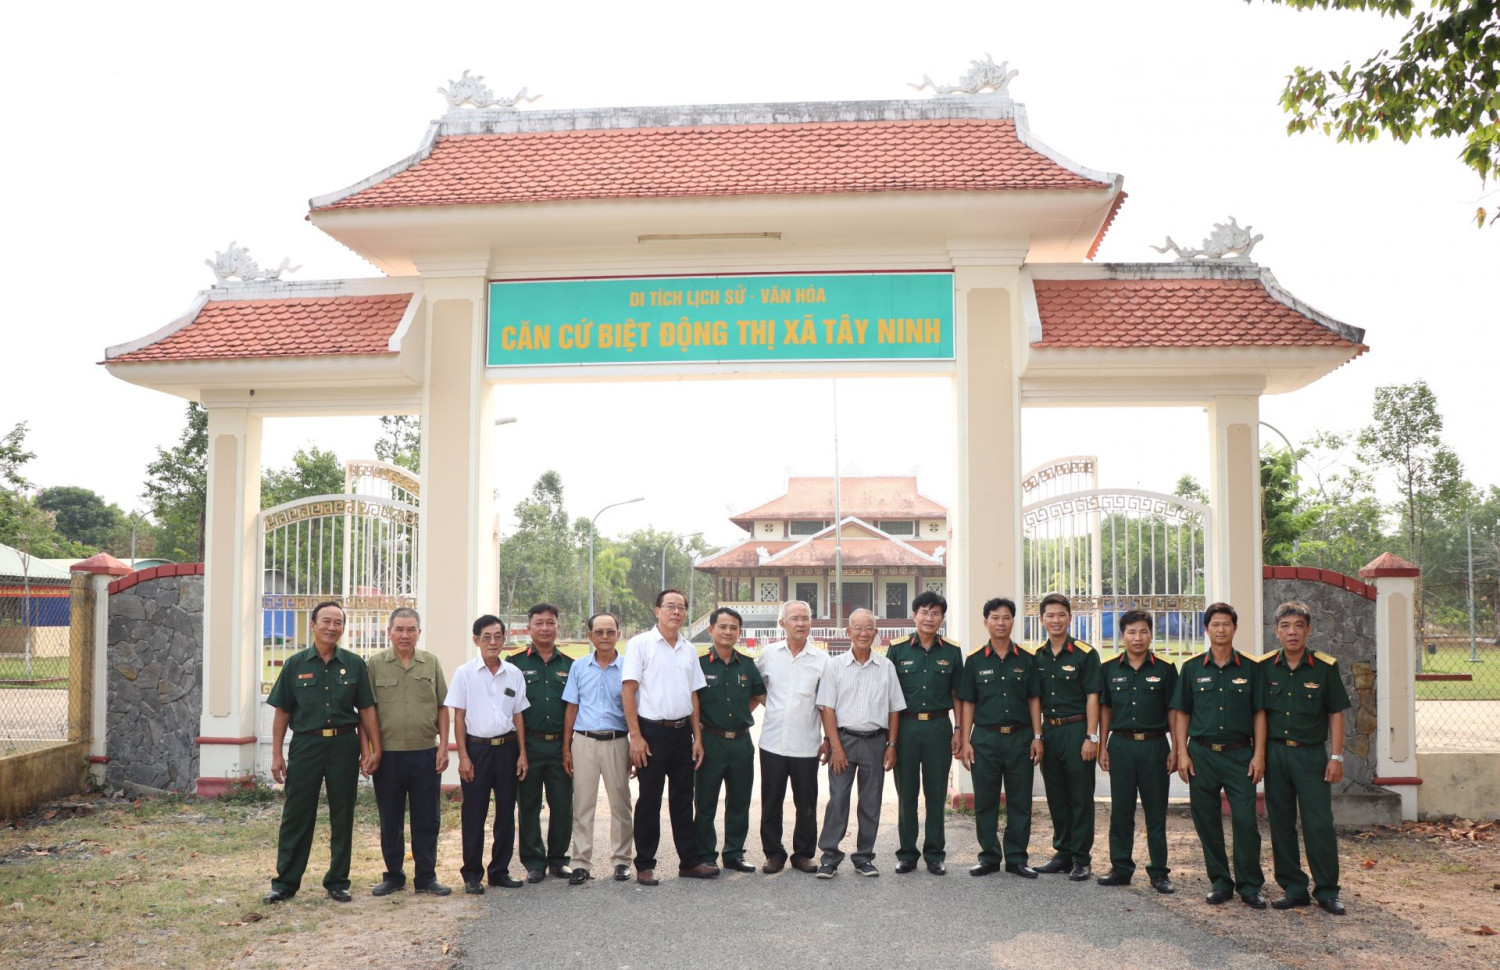 Các đồng chí Ban Liên lạc truyền thống (C2/45) và Ban CHQS TP. Tây Ninh thăm Di tích lịch sử - văn hoá Căn cứ biệt động thị xã Tây Ninh.